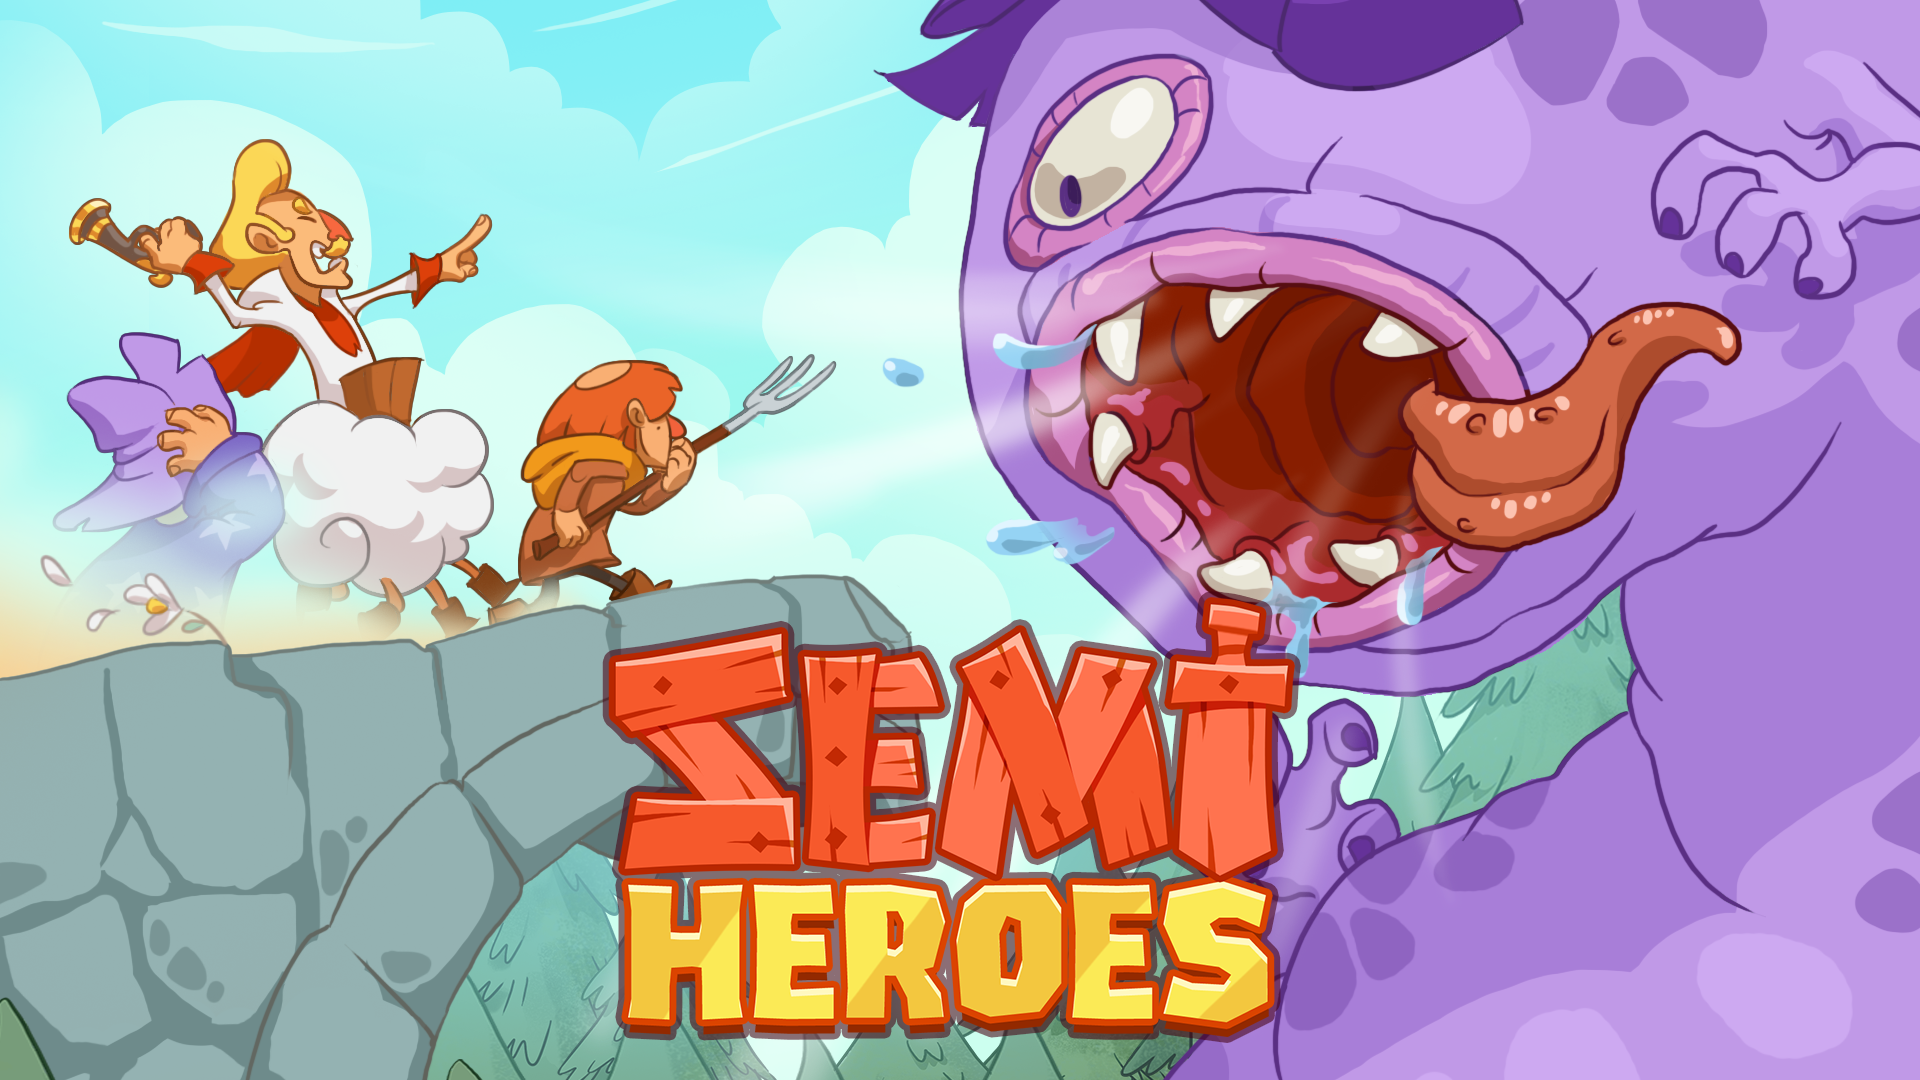 Screenshot 1 of Semi Heroes: Anuncio inactivo y con clics 1.1.0